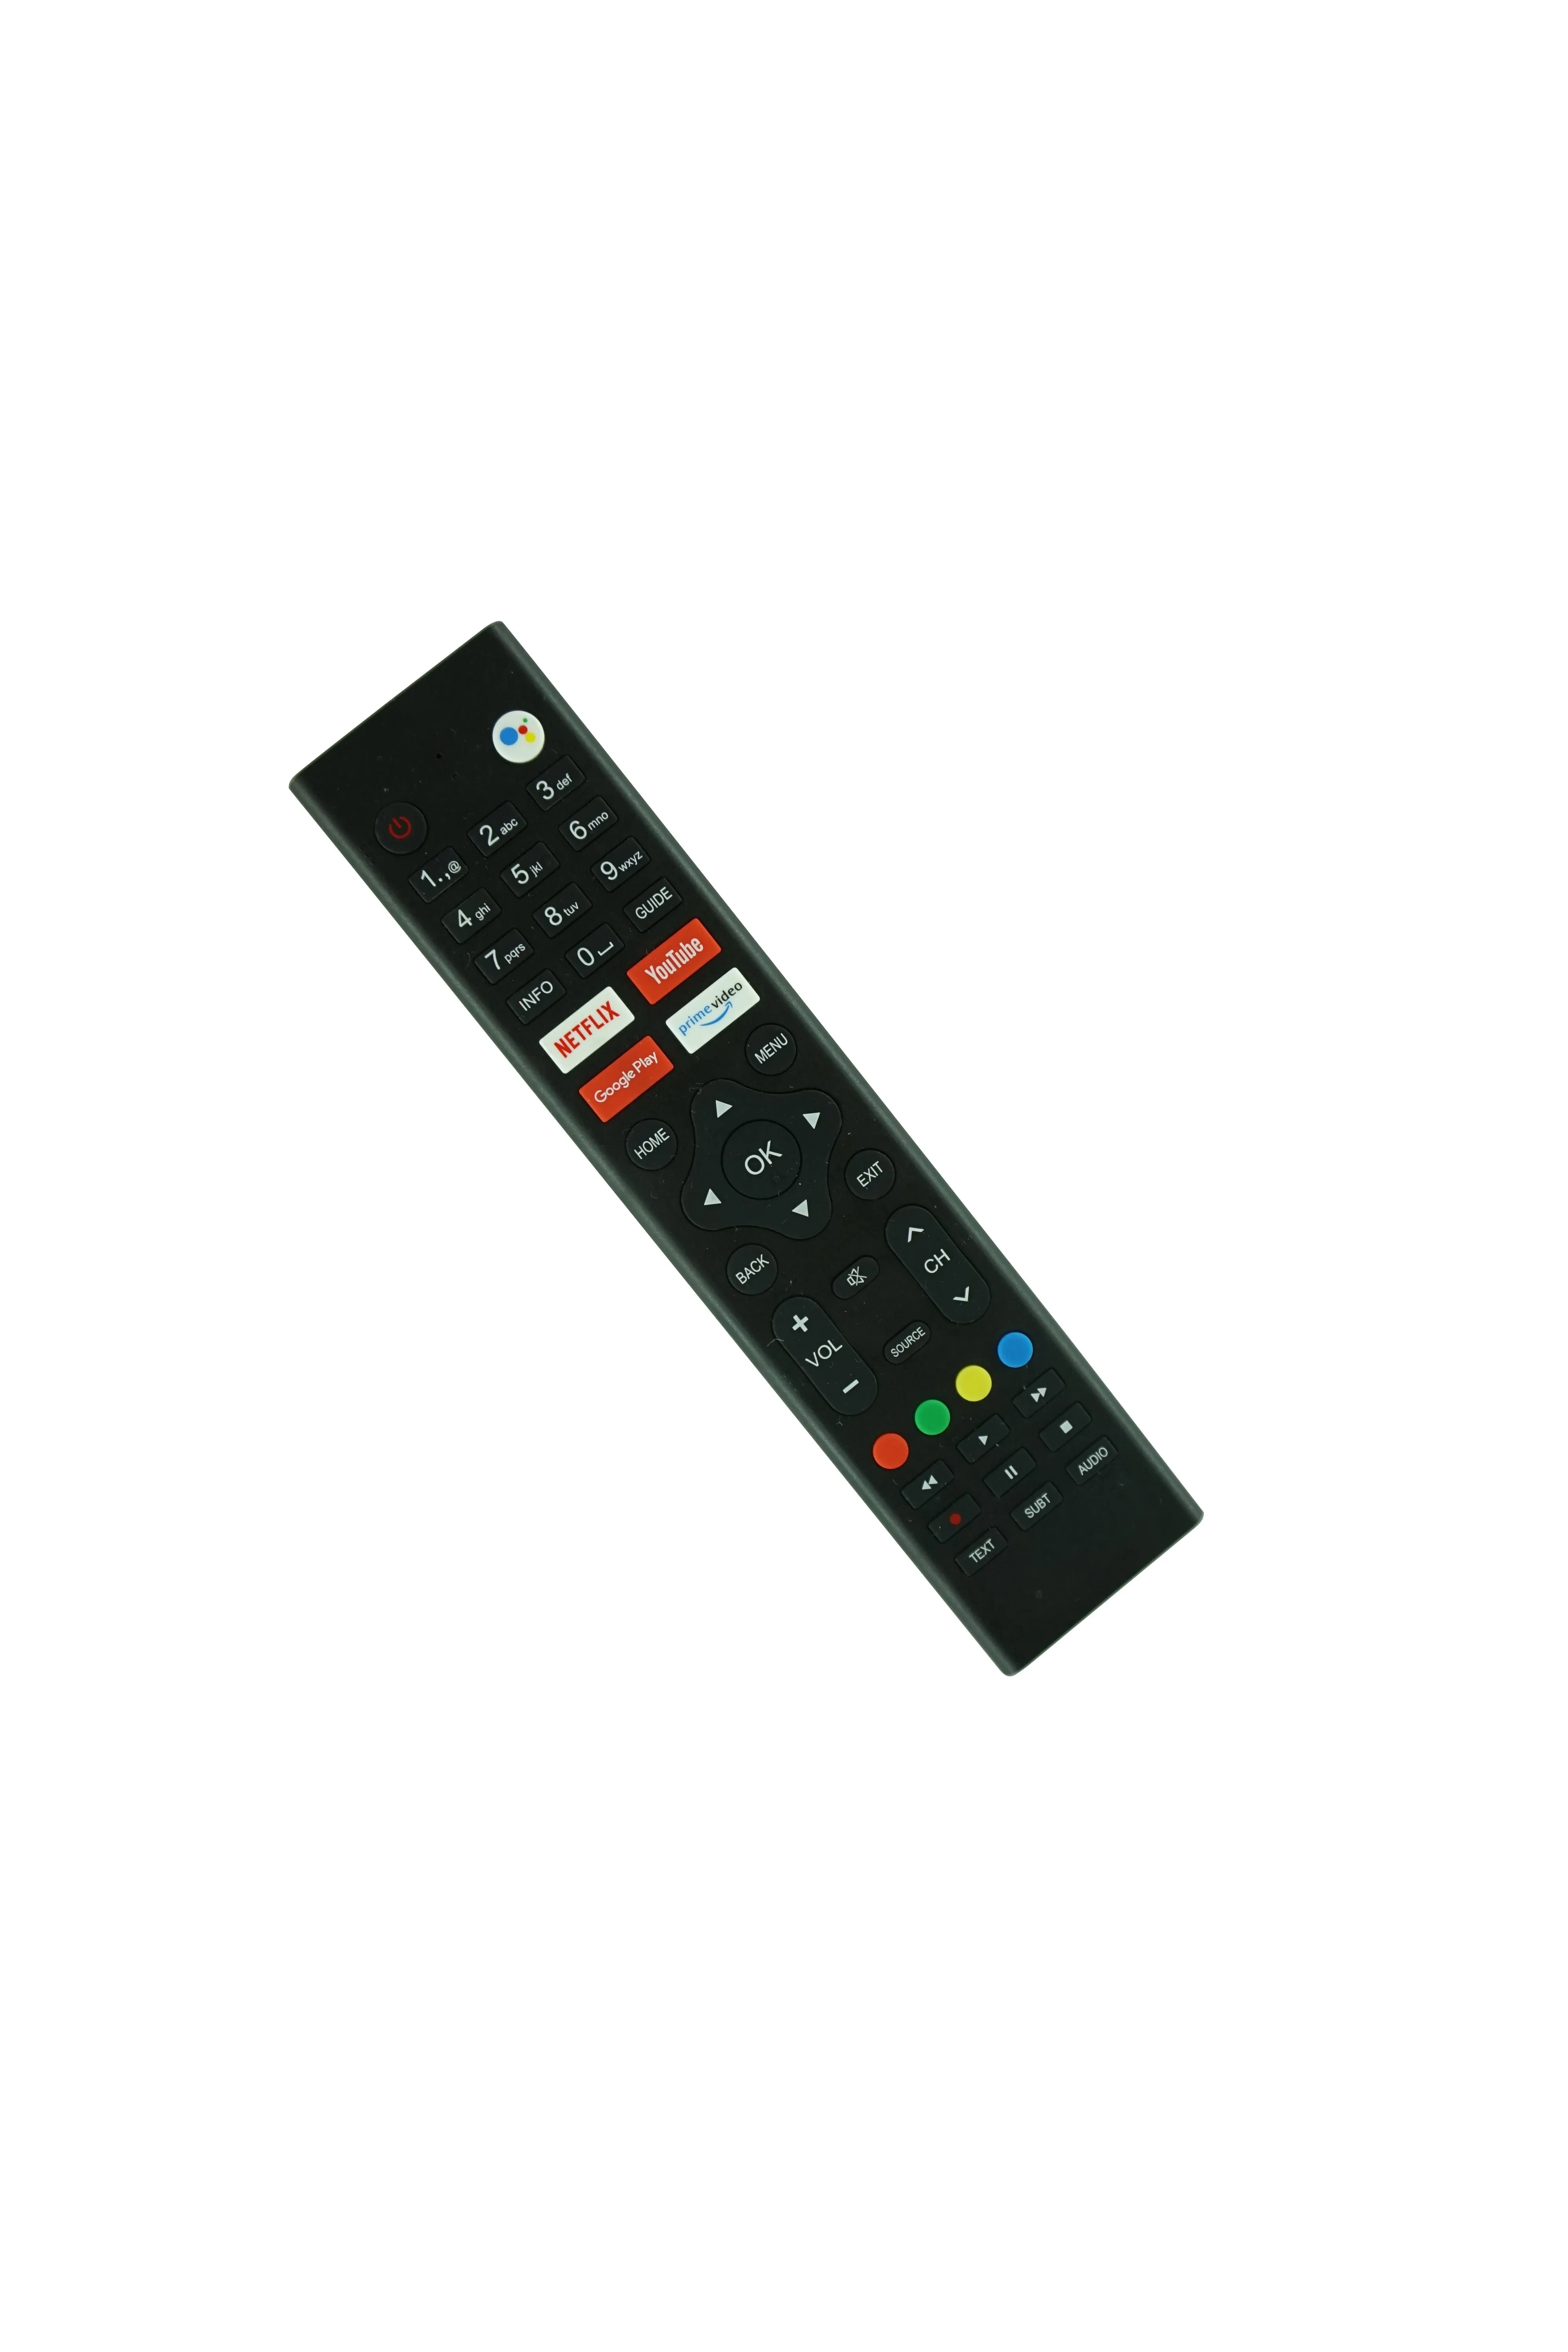 Sprach-Bluetooth-Fernbedienung für OK. ODL32760HN-TAB ODL40670FN-TAB ODL40760FN-TAB ODL24760HN-TAB ODL24771HN-TAB ODL32761HN-TAB Smart LED LCD HDTV Android TV